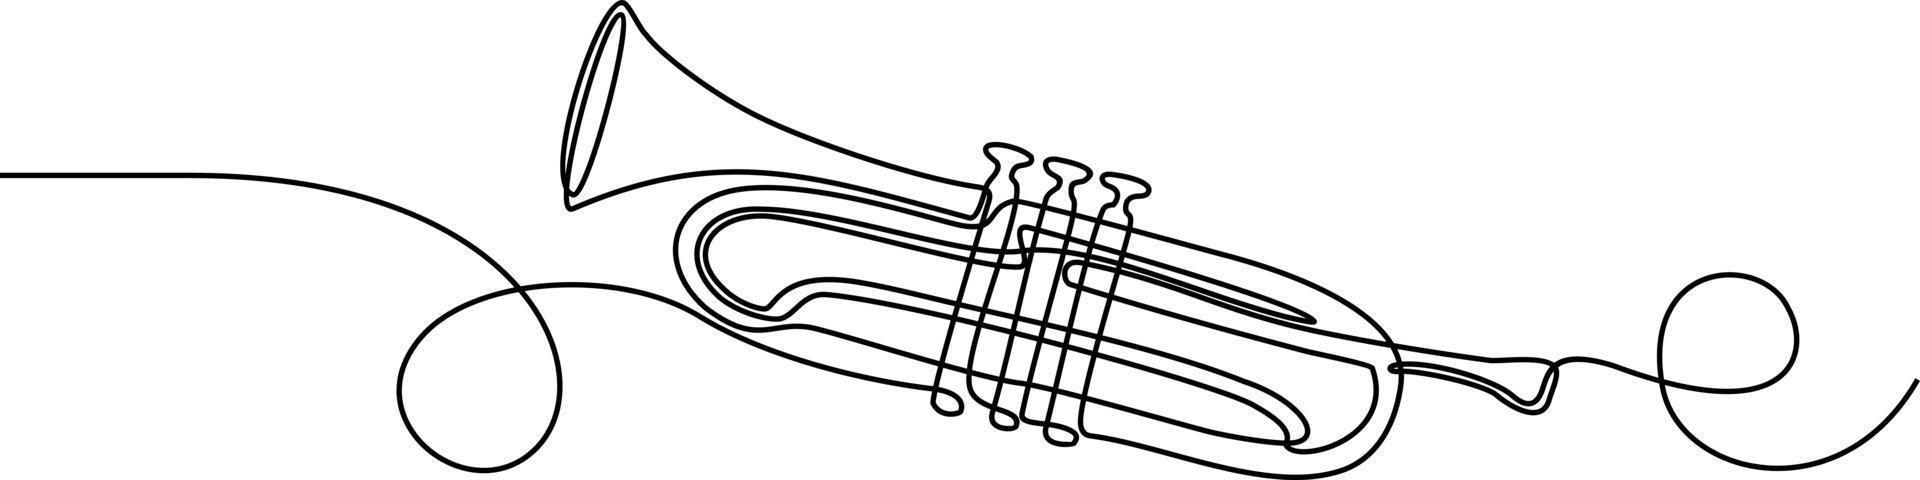 dessin continu d'une ligne d'instrument de musique trompette vecteur